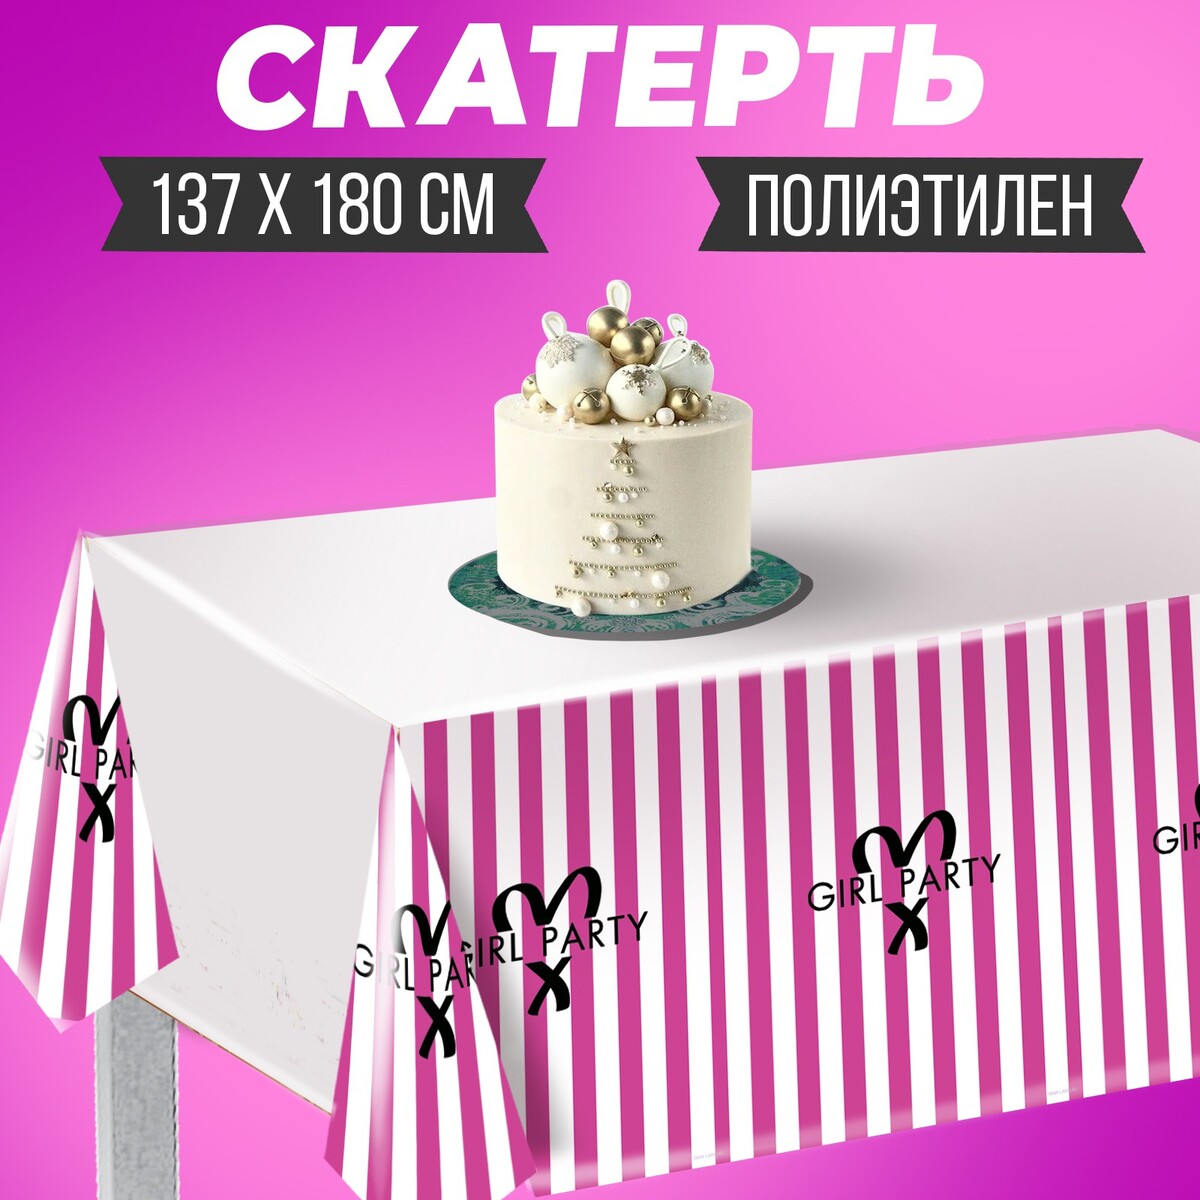 Скатерть girl party, 137 × 180 см, полиэтилен скатерть it s a girl 137 × 183 см